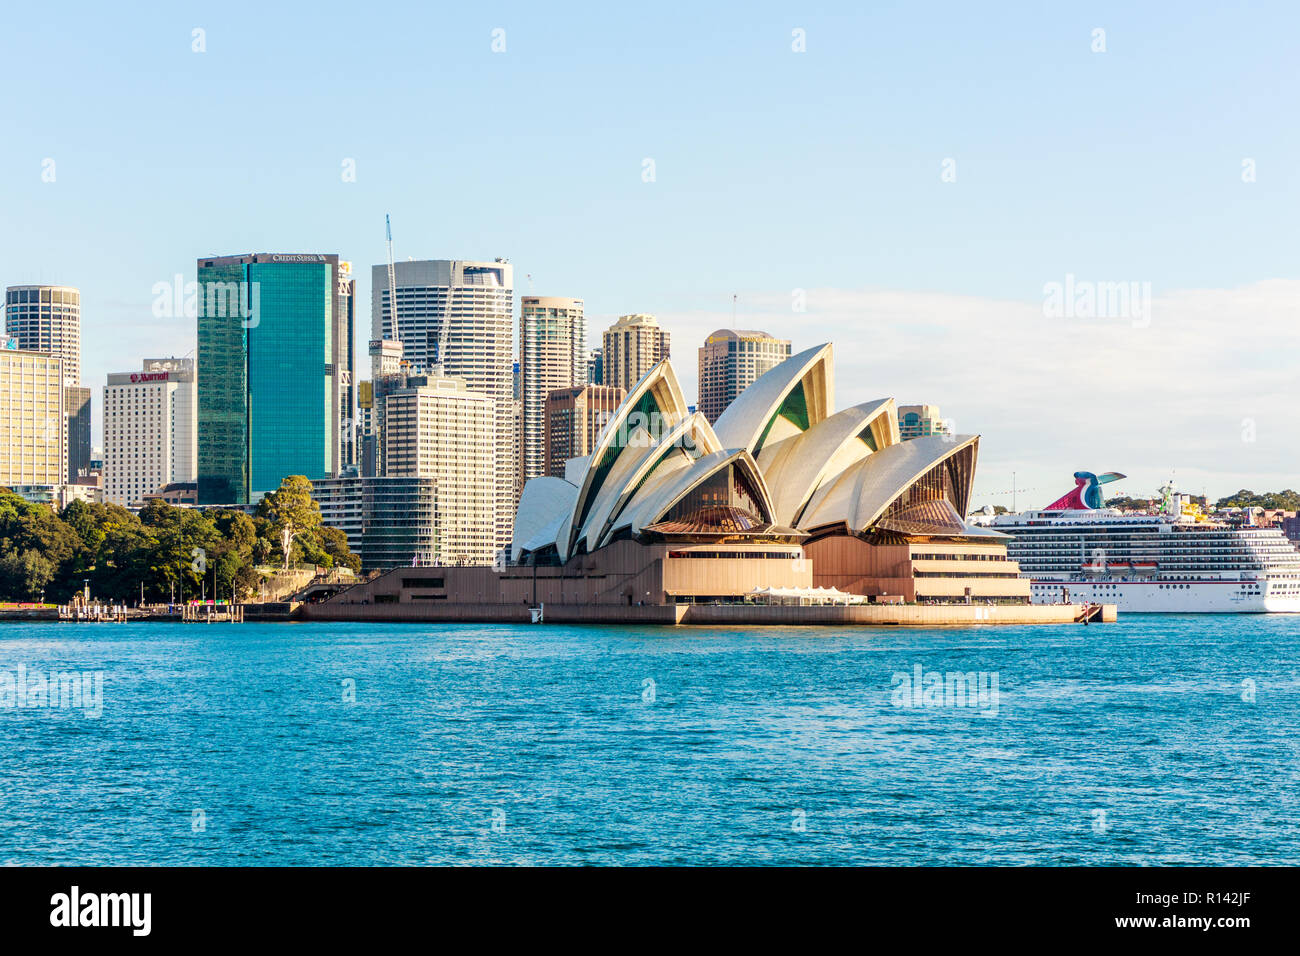 Sydney, Australien - 5. Juni 2015: Das kreuzfahrtschiff Carnival Spirit günstig neben der Oper. Sydney ist eine beliebte Kreuzfahrt Ziel. Stockfoto